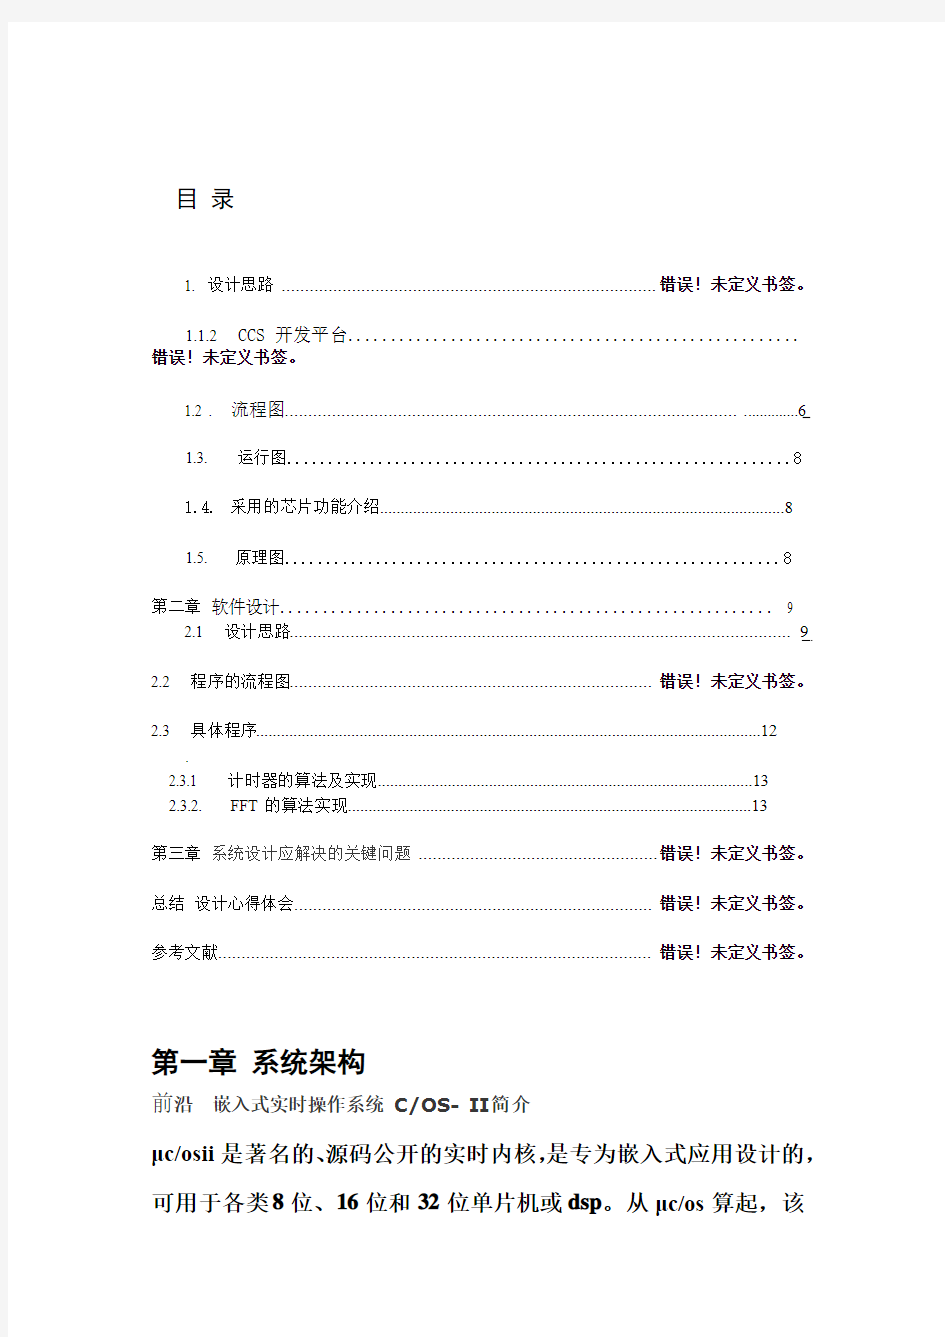 谭毅通信系统课程设计报告.doc13